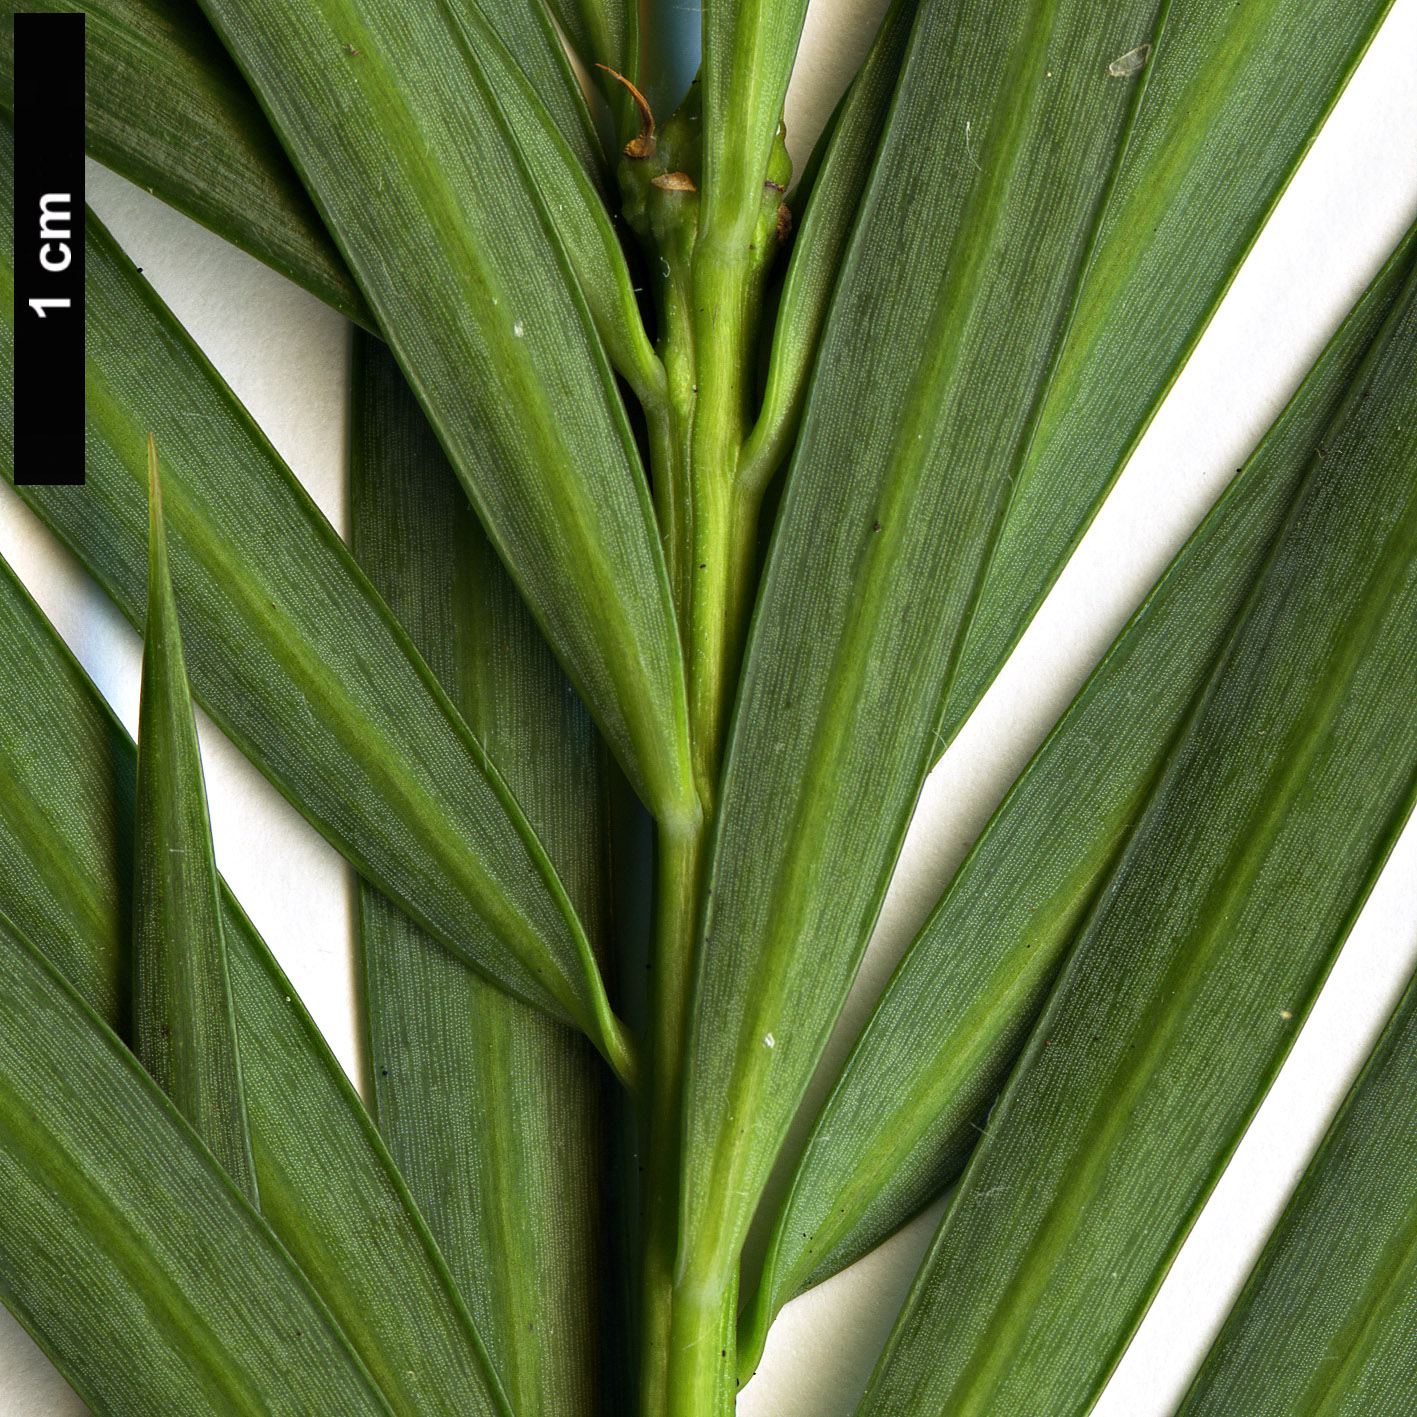 High resolution image: Family: Podocarpaceae - Genus: Podocarpus - Taxon: parlatorei